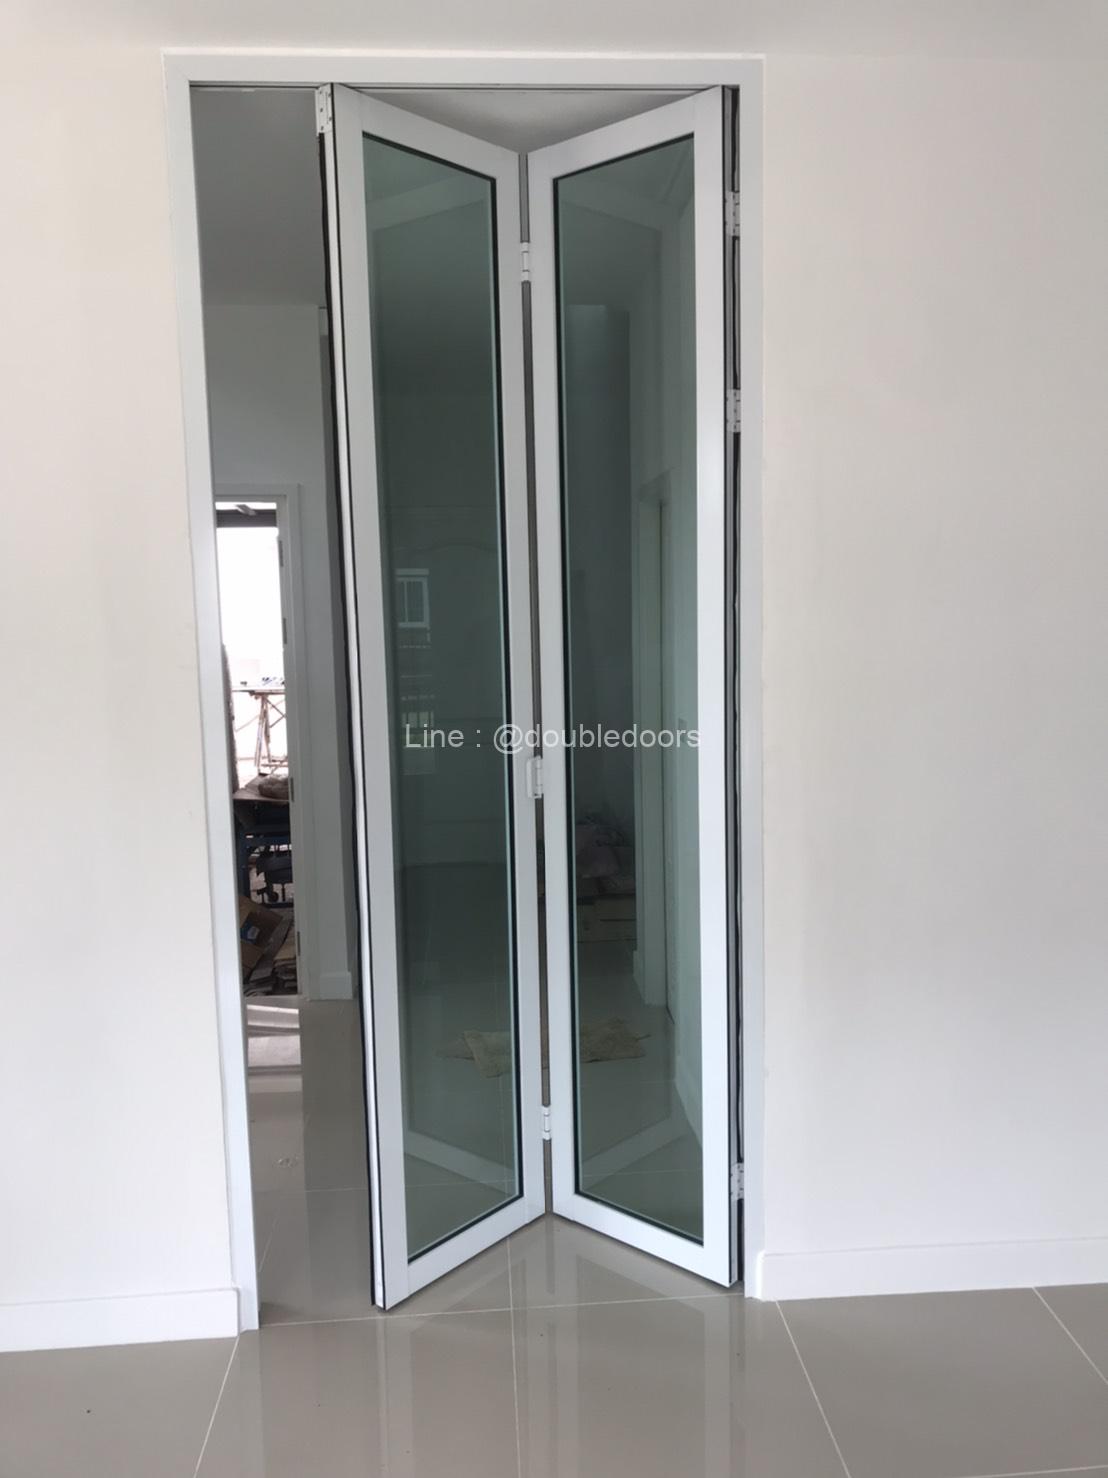 ประตูบานเฟี้ยมสีอบขาว รหัสโครงการ W-1208